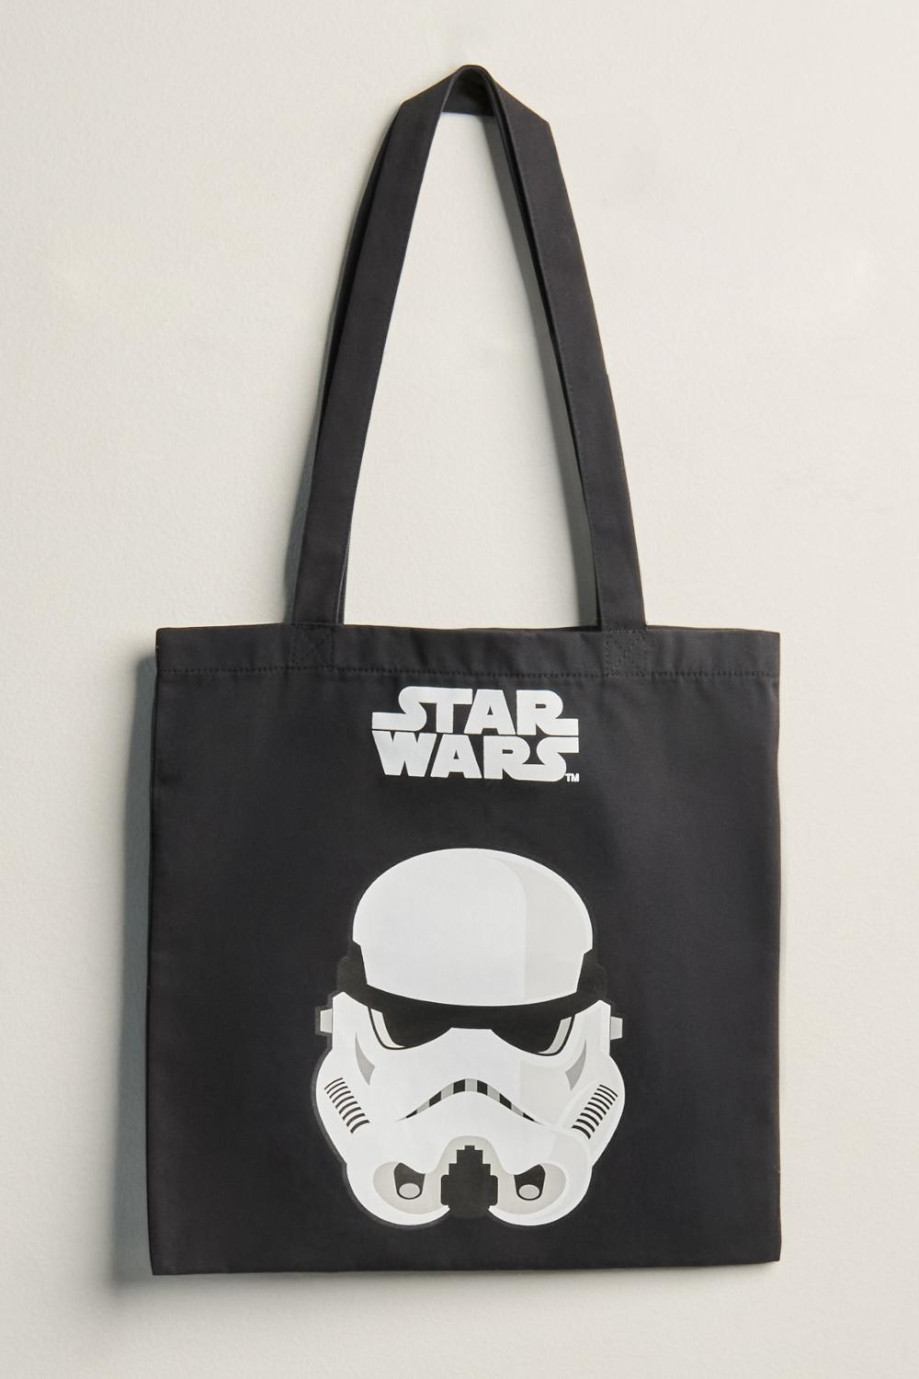 Bolsa tote bag unicolor en algodón con diseño de Star Wars